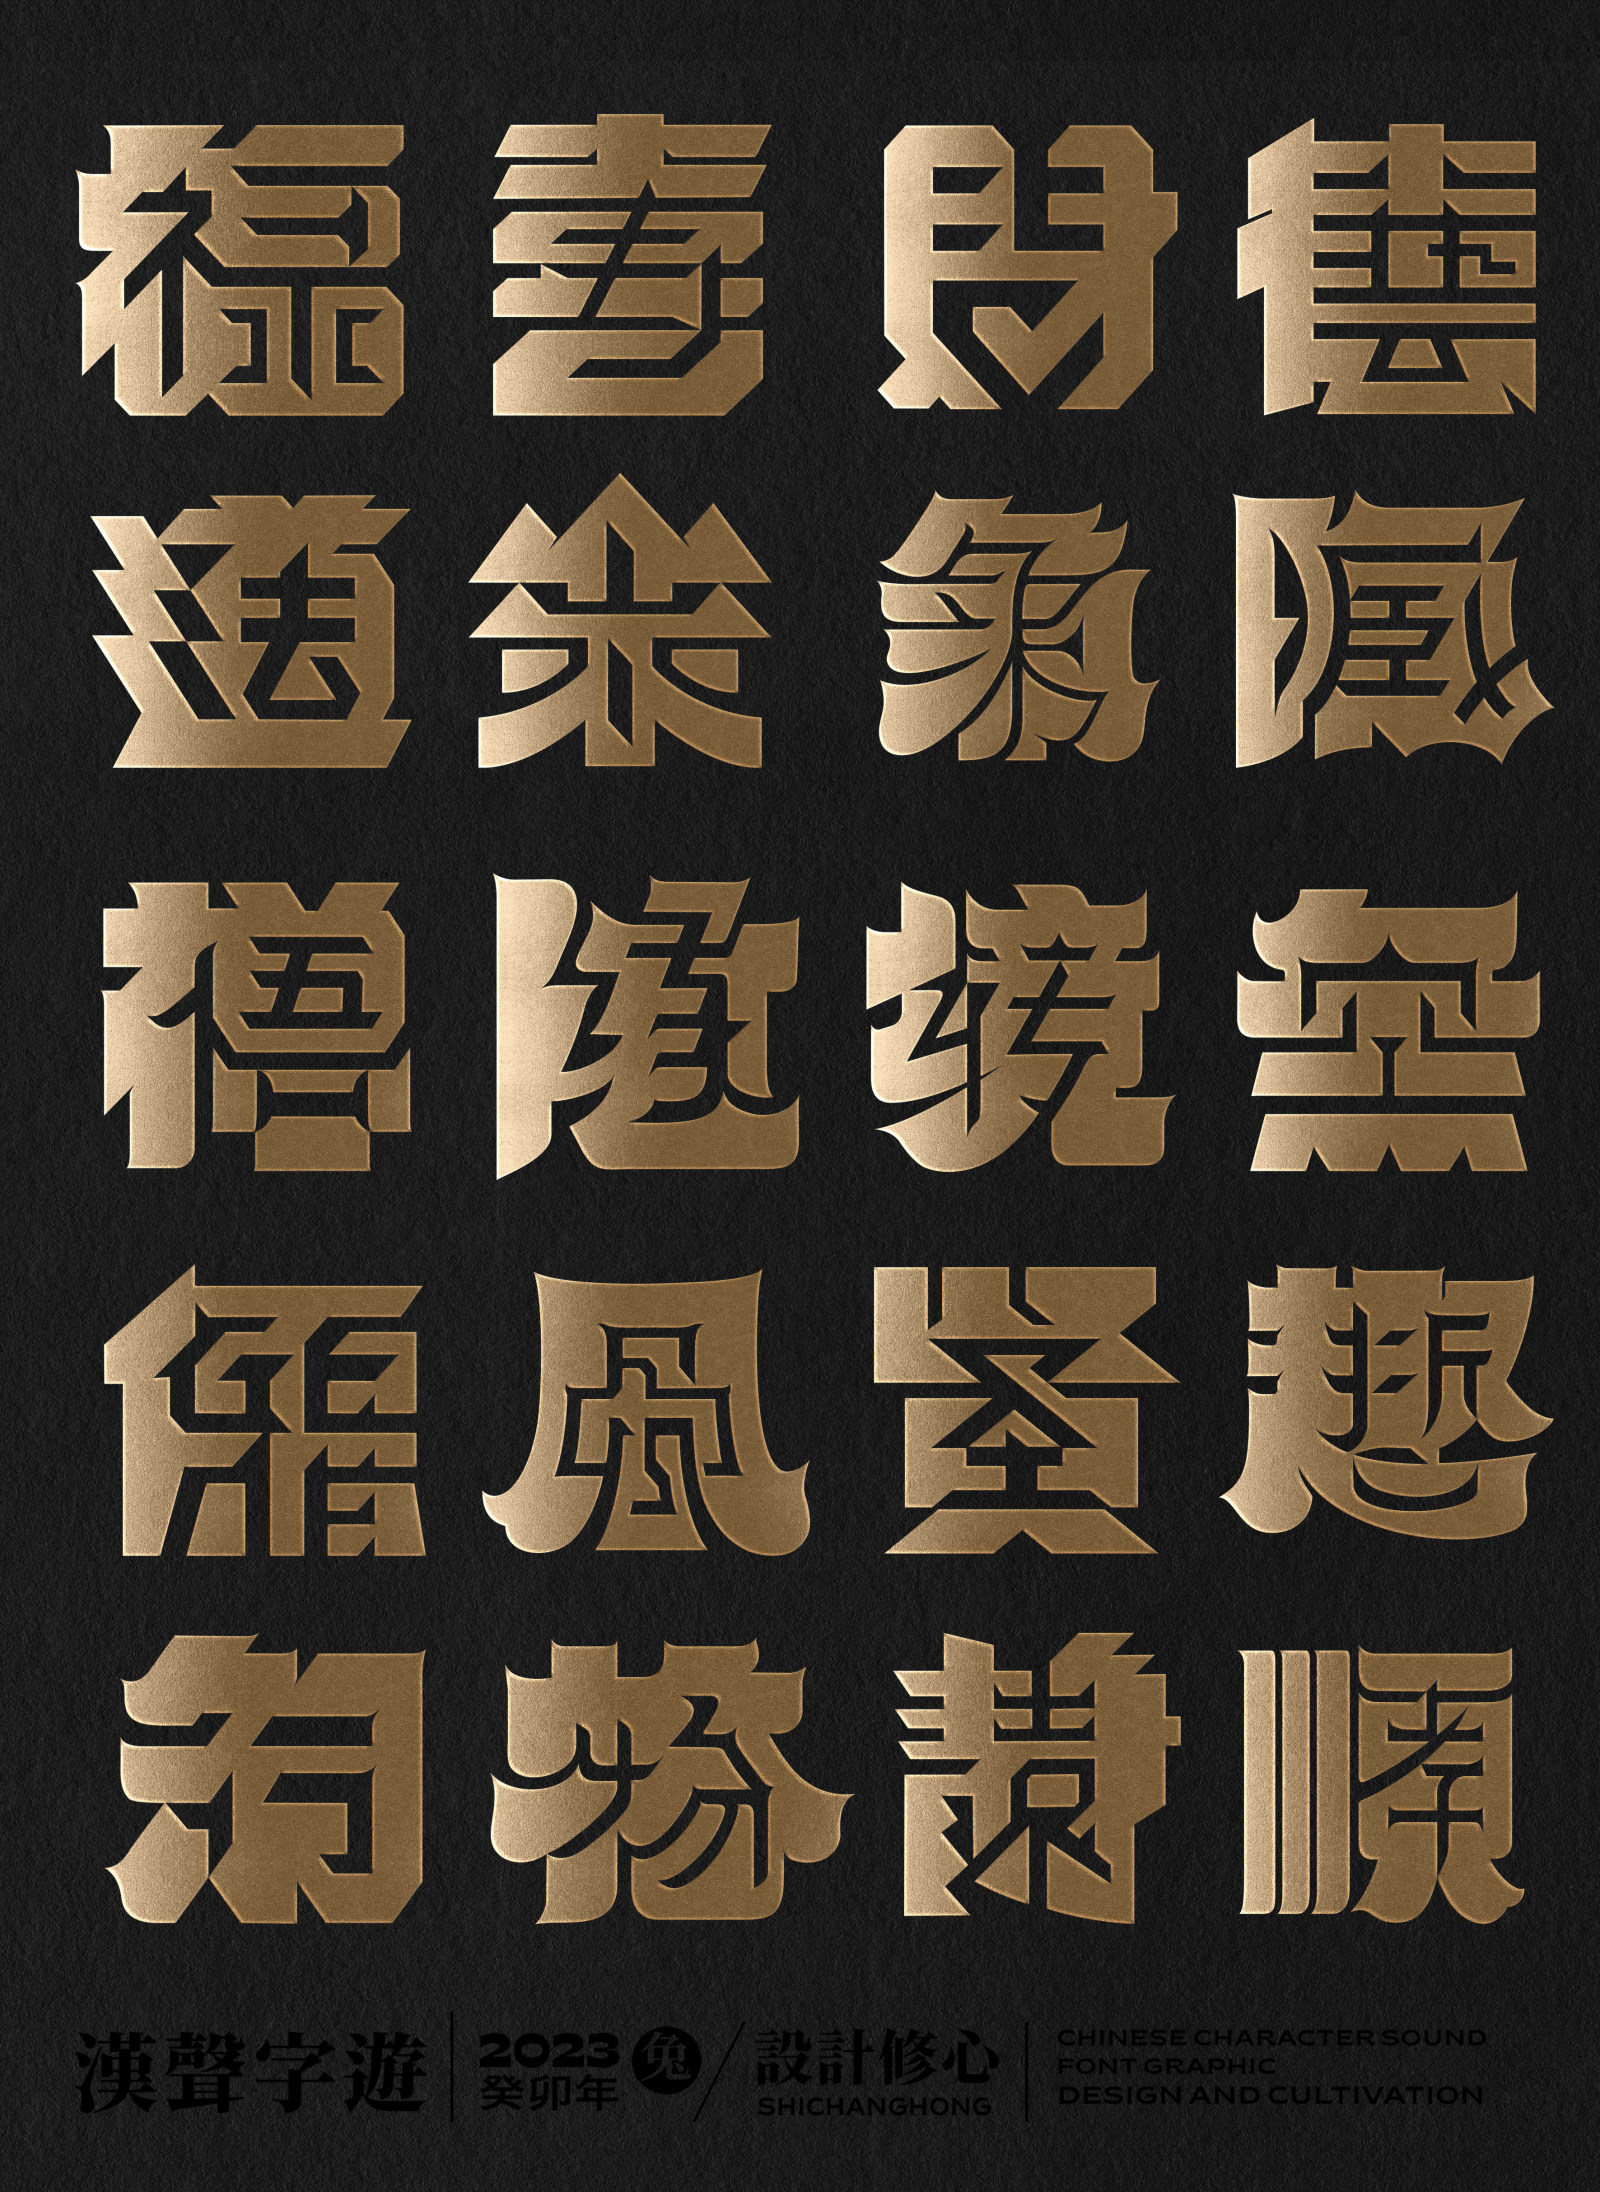 石昌鴻正負形字體設計